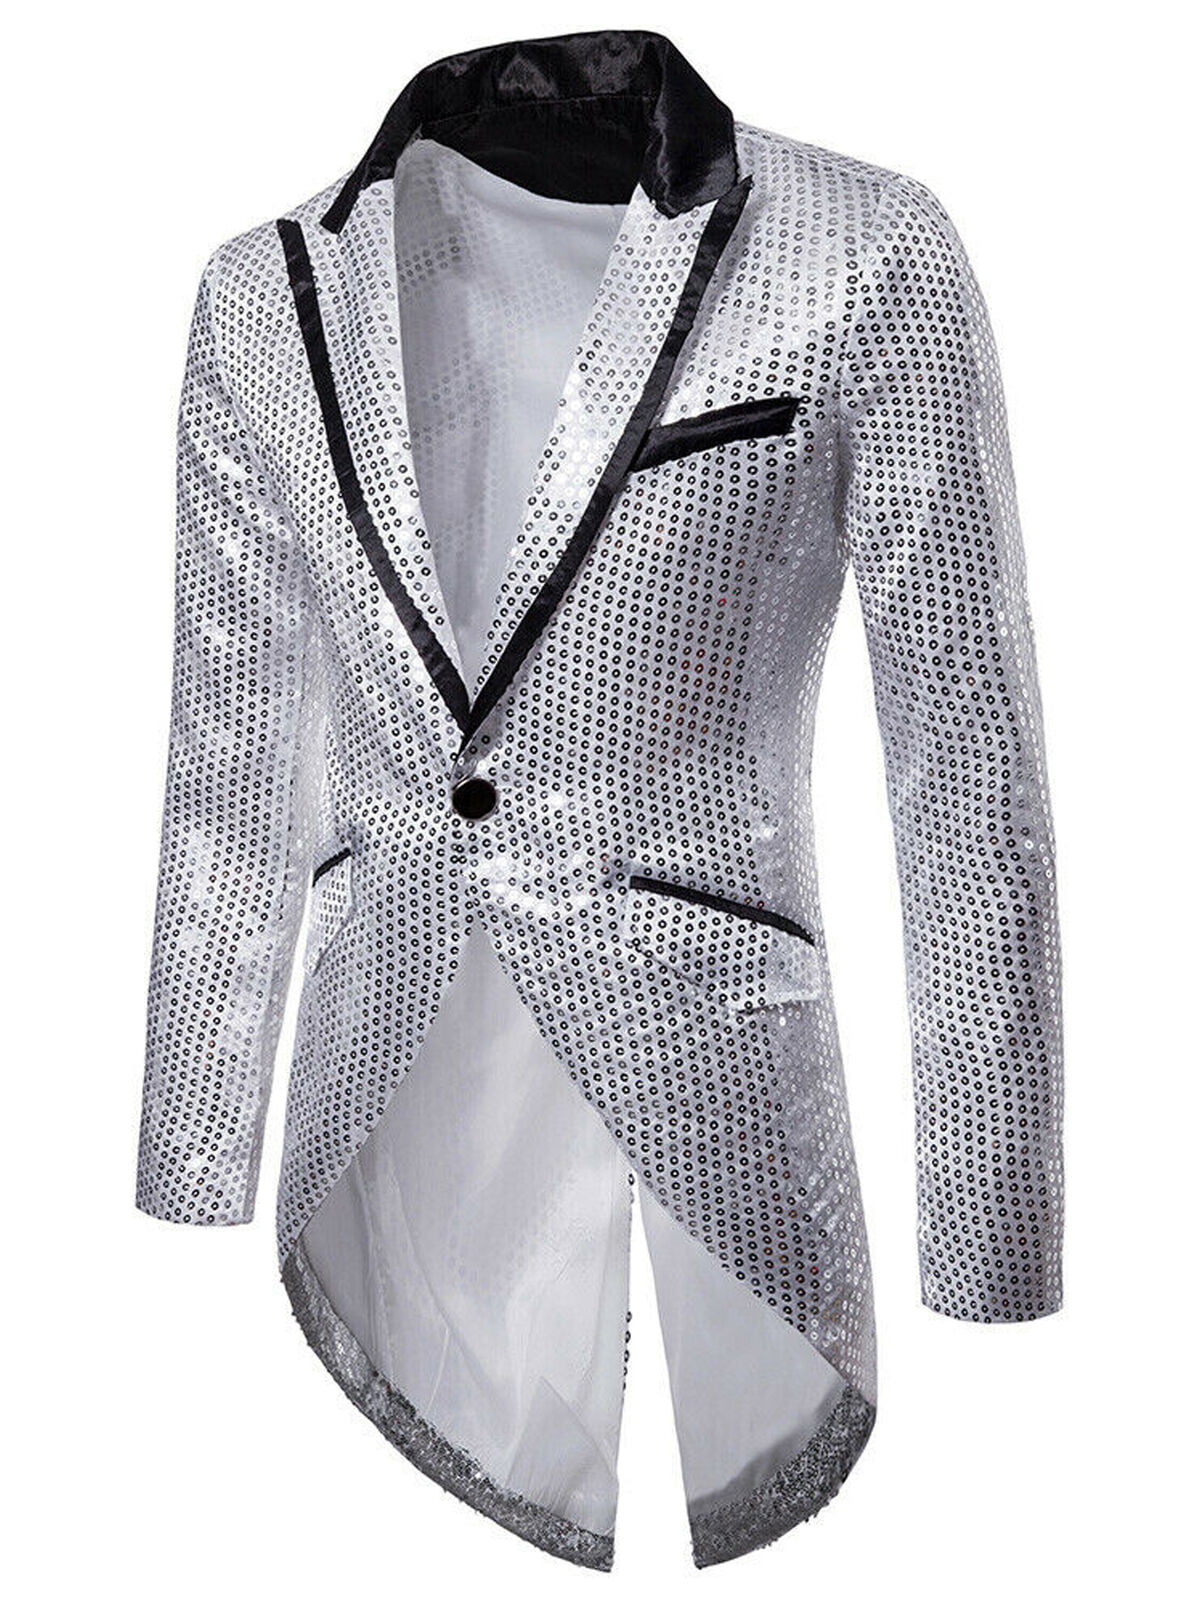 Men's Suits Coats 2021 Fashion Casual Jacket One Button Fit Suit Coat Jacket Sequin Lapel Party Tops